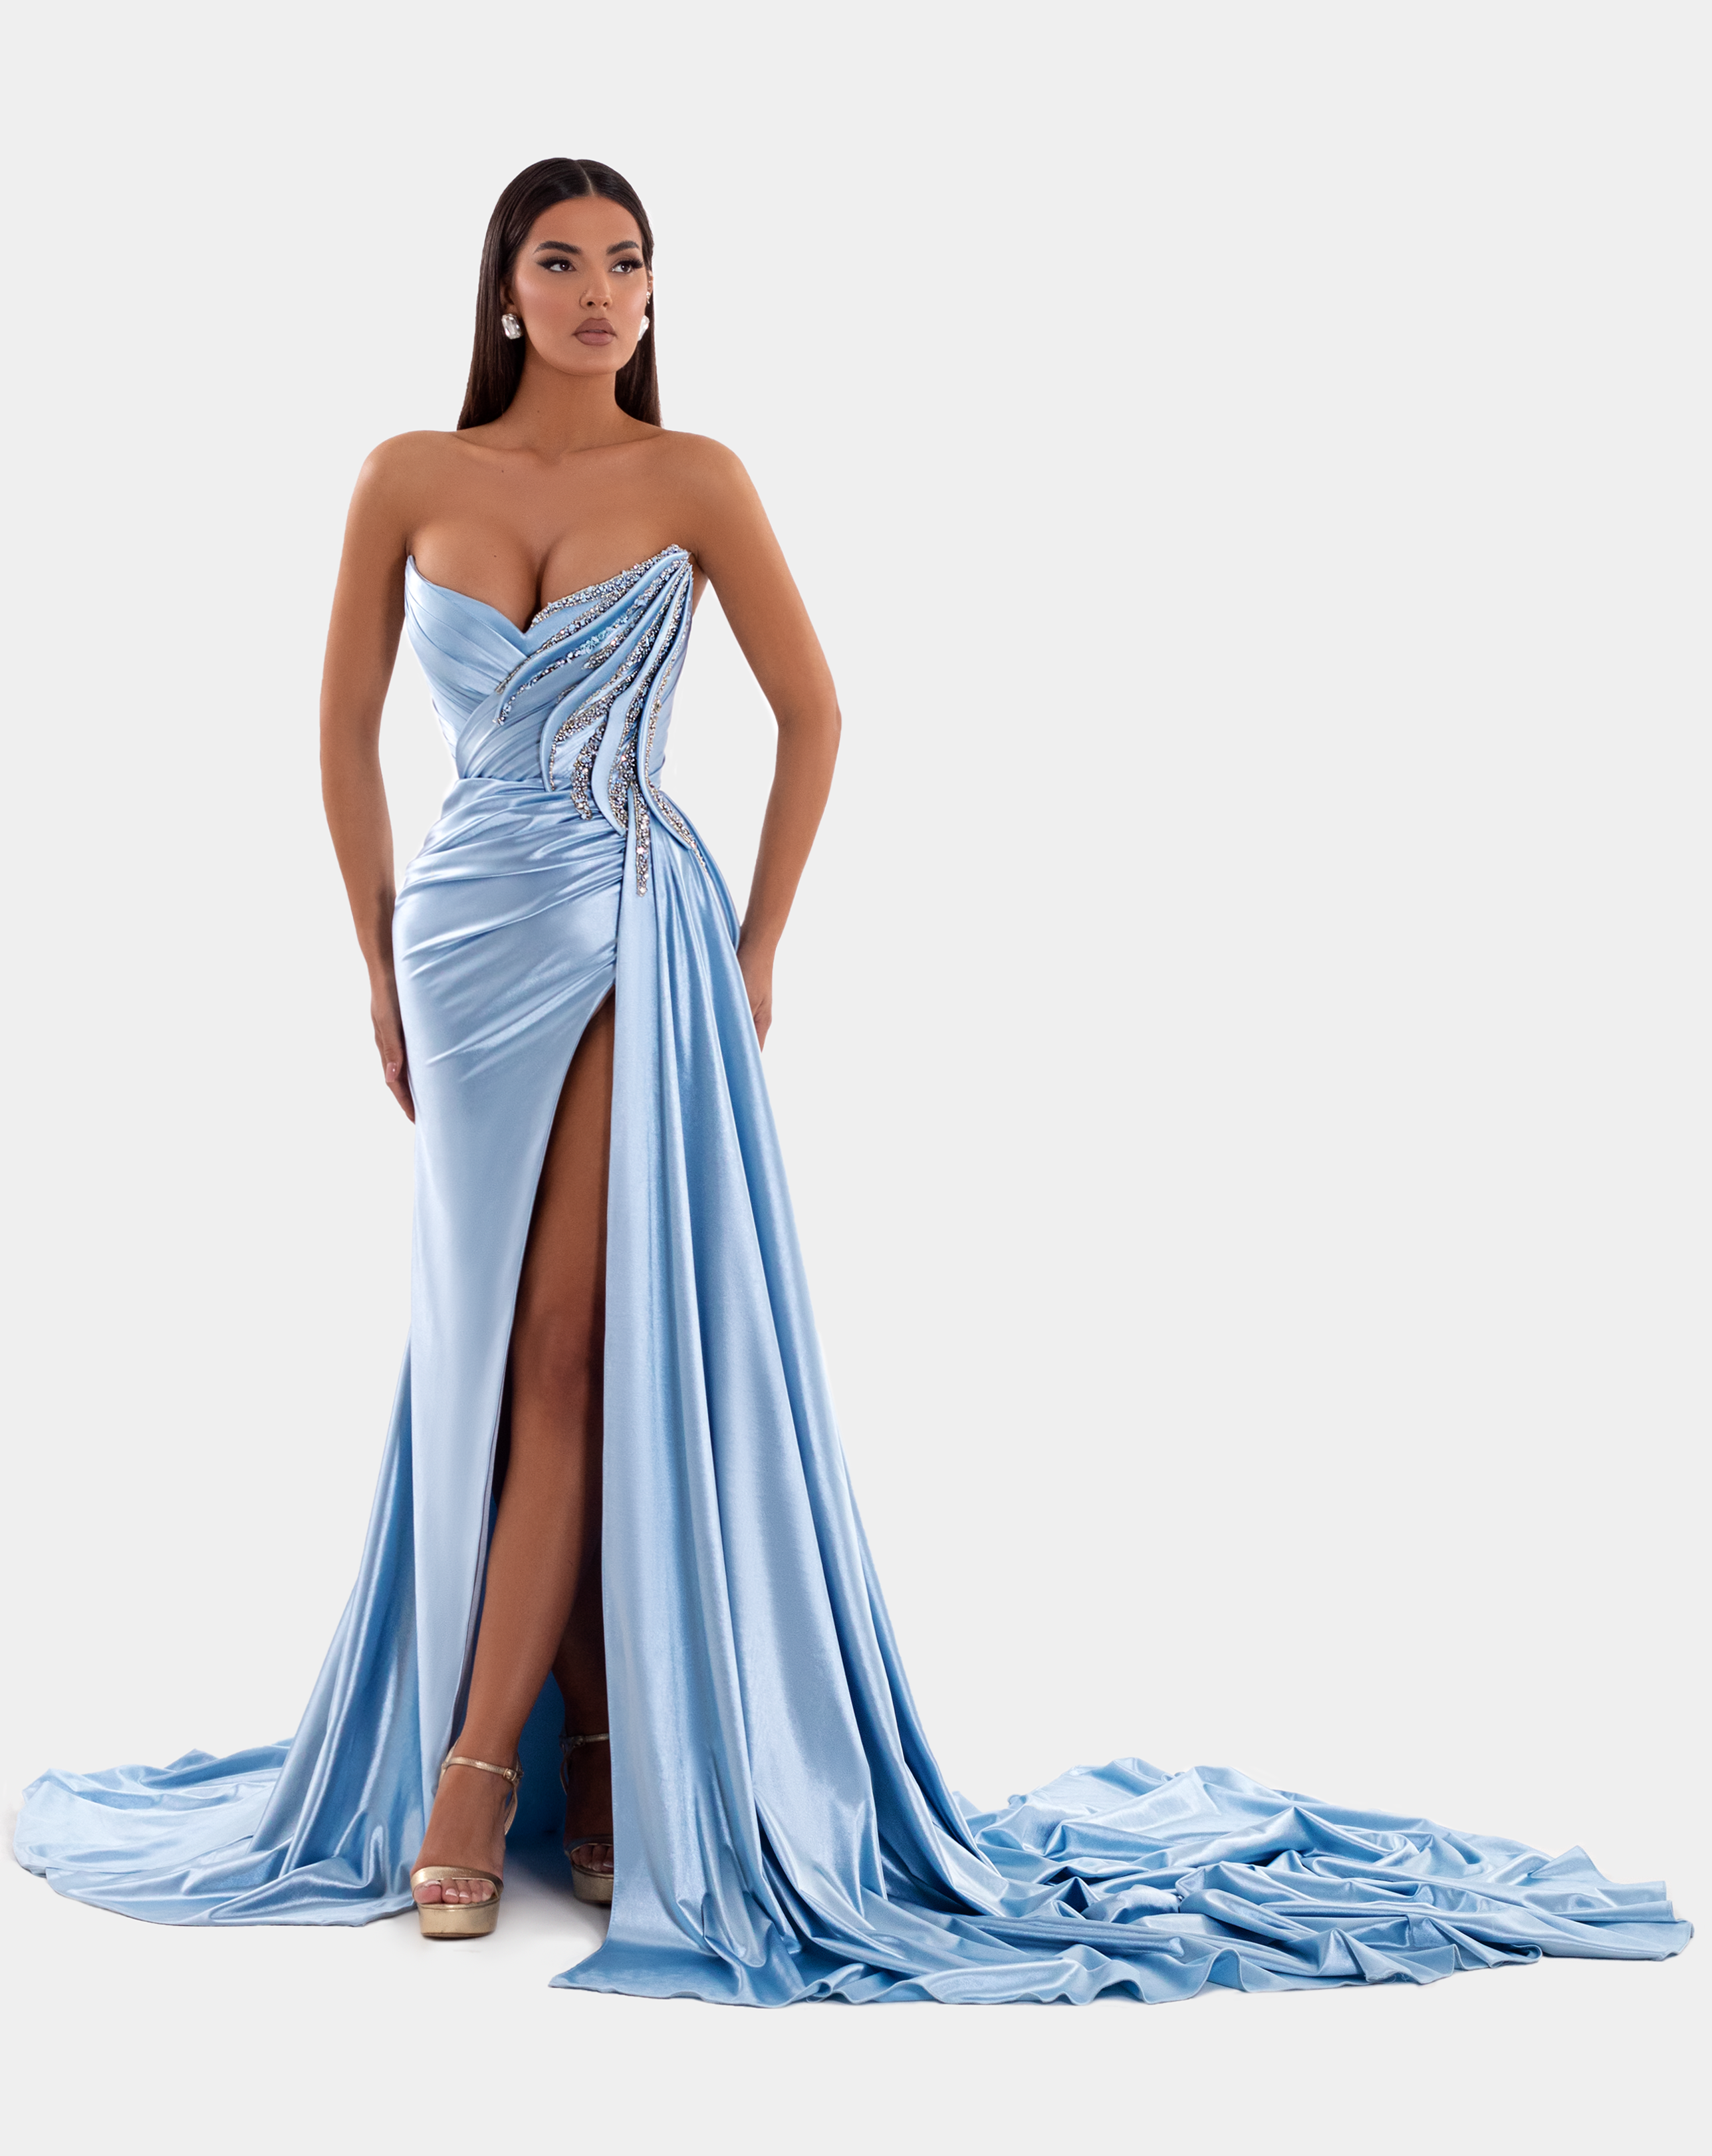 One-shoulder dress in light blue – Shop maxi dress